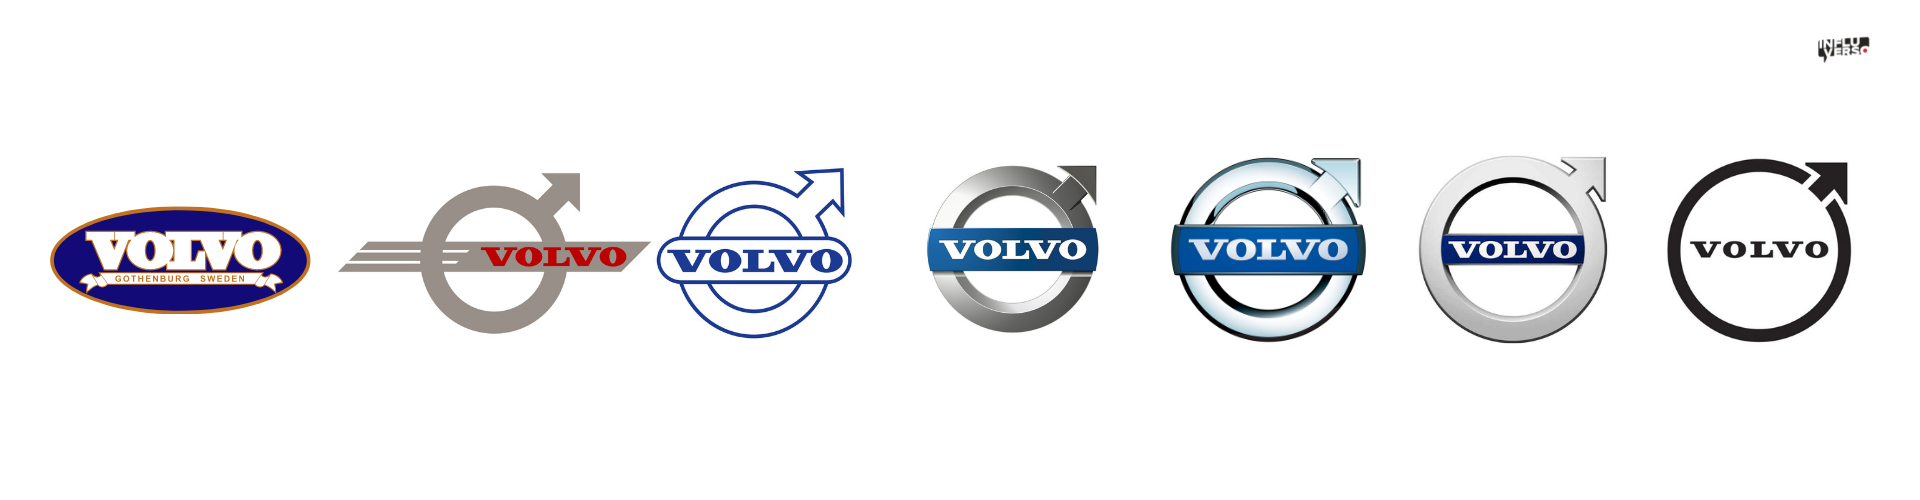 Todos los logos de Volvo